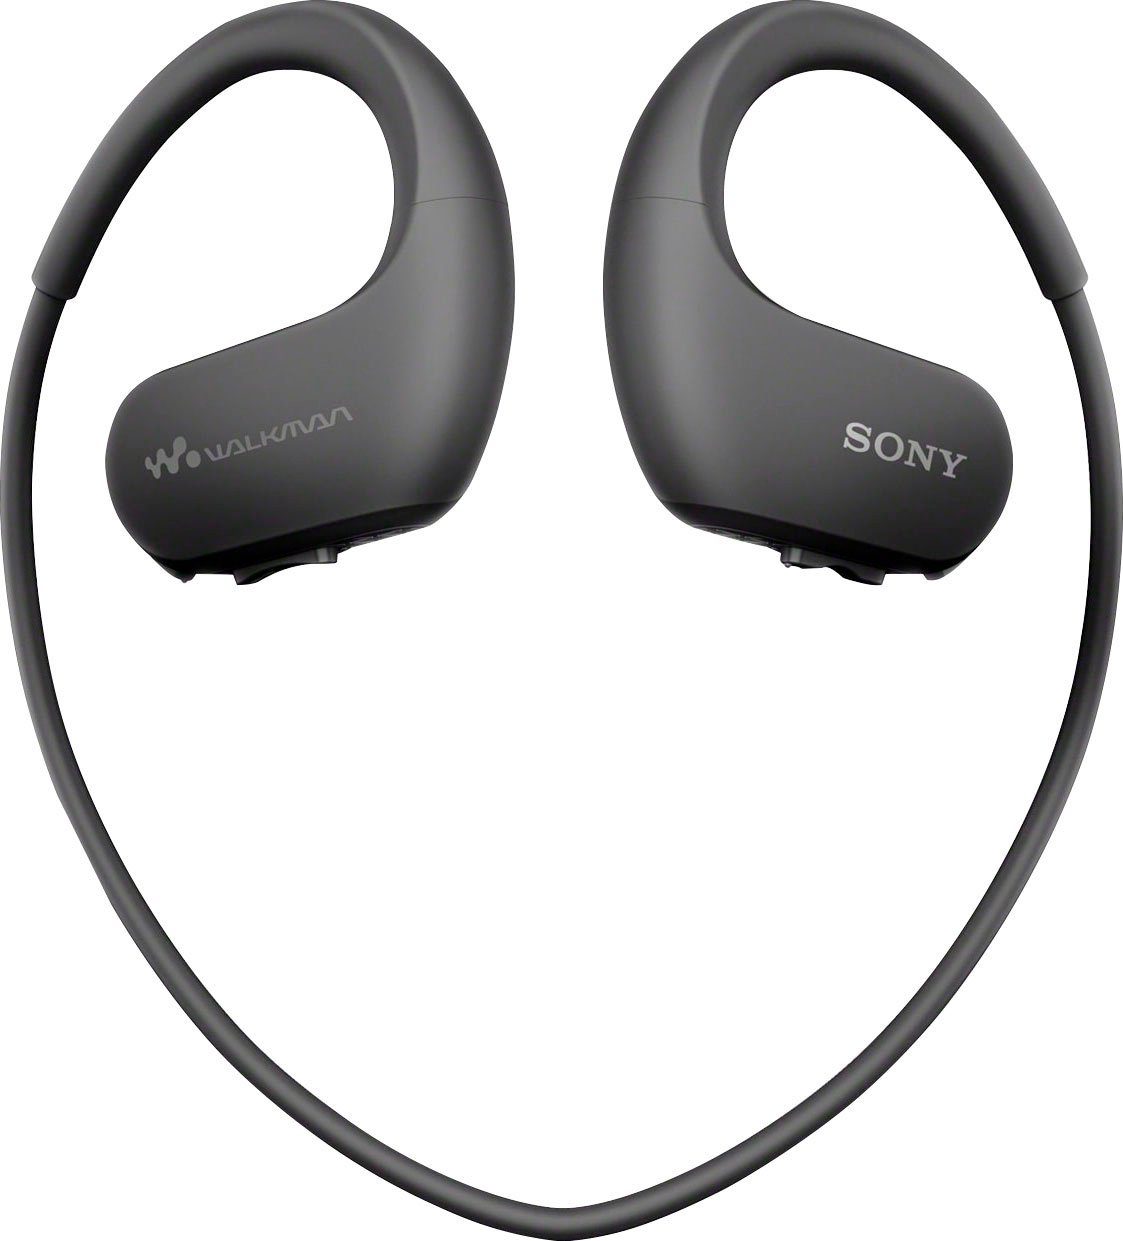 NW-WS413 (4 GB) MP3-Player Sony schwarz